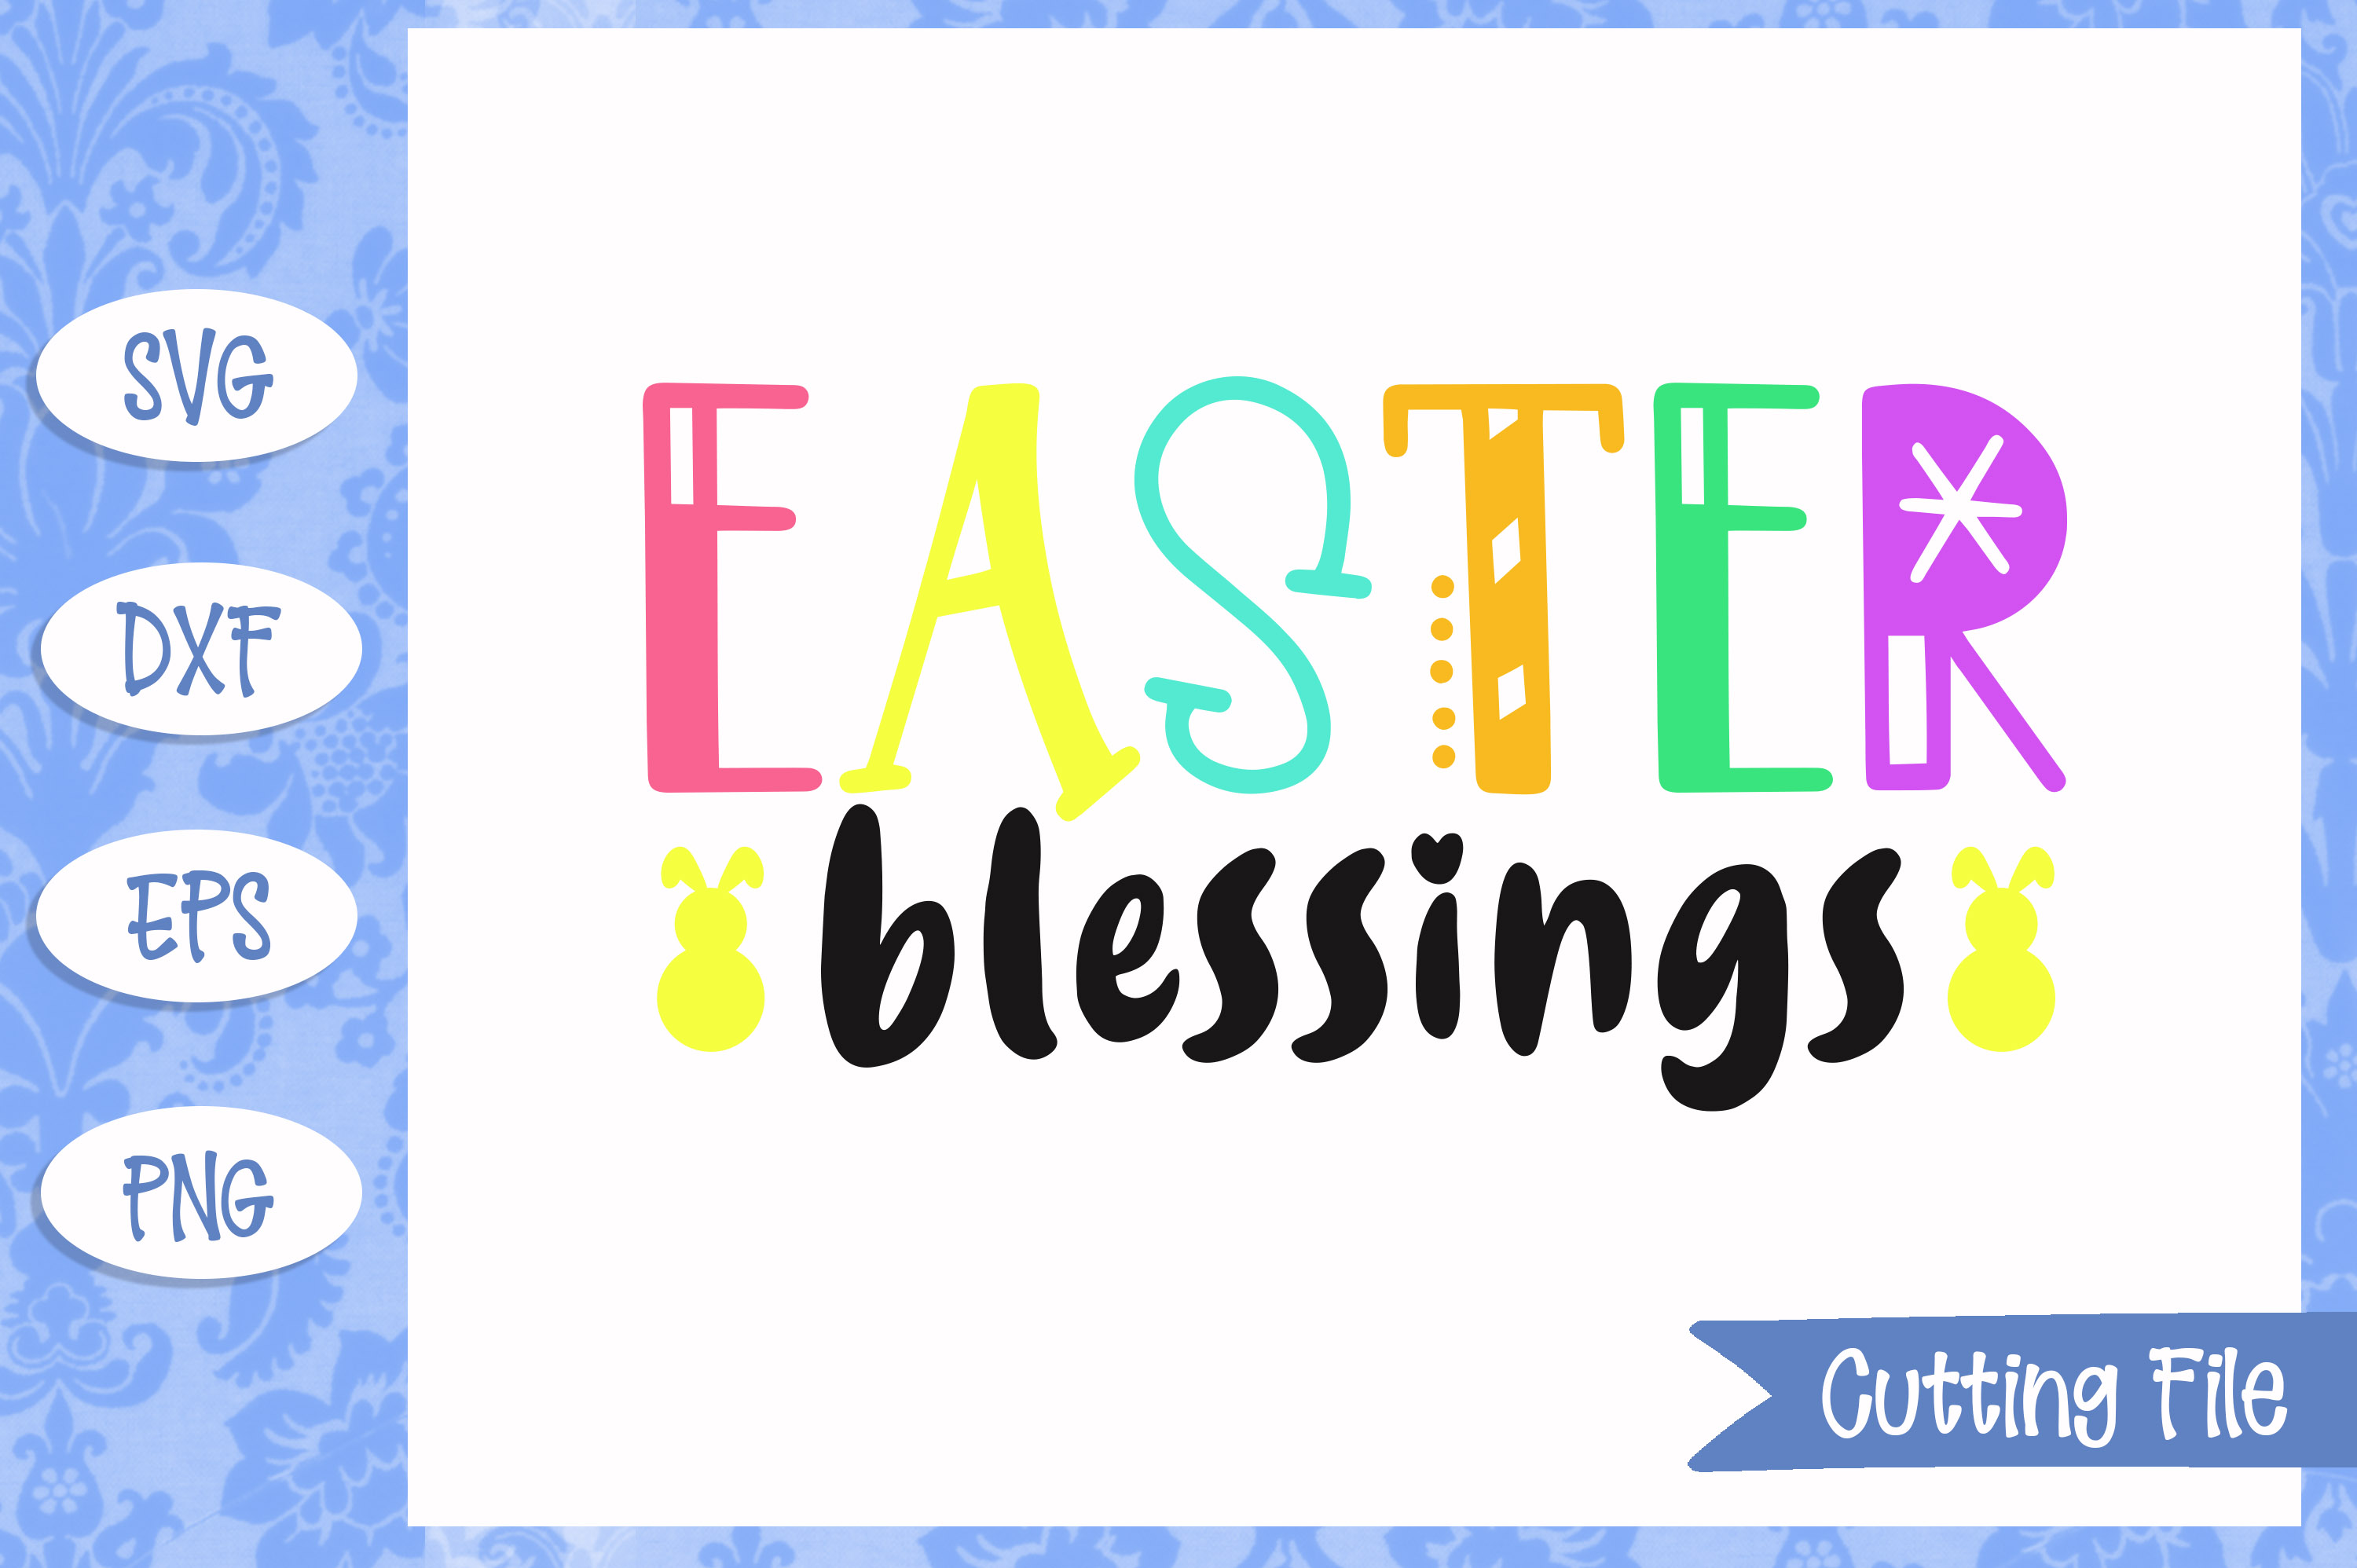 Easter Blessings SVG File